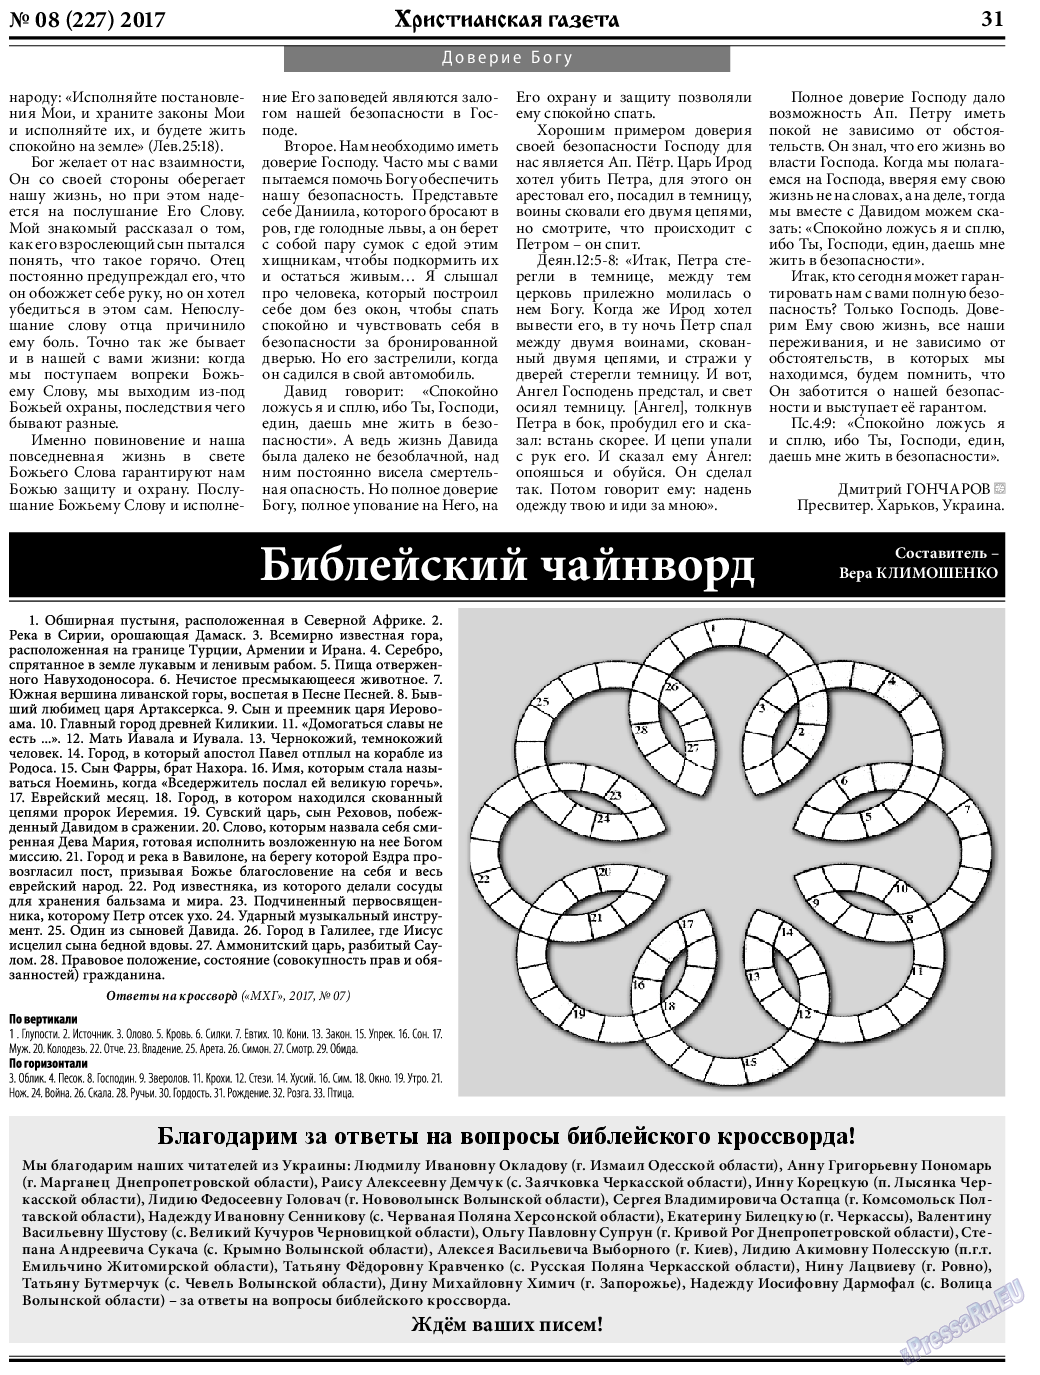 Христианская газета, газета. 2017 №8 стр.31